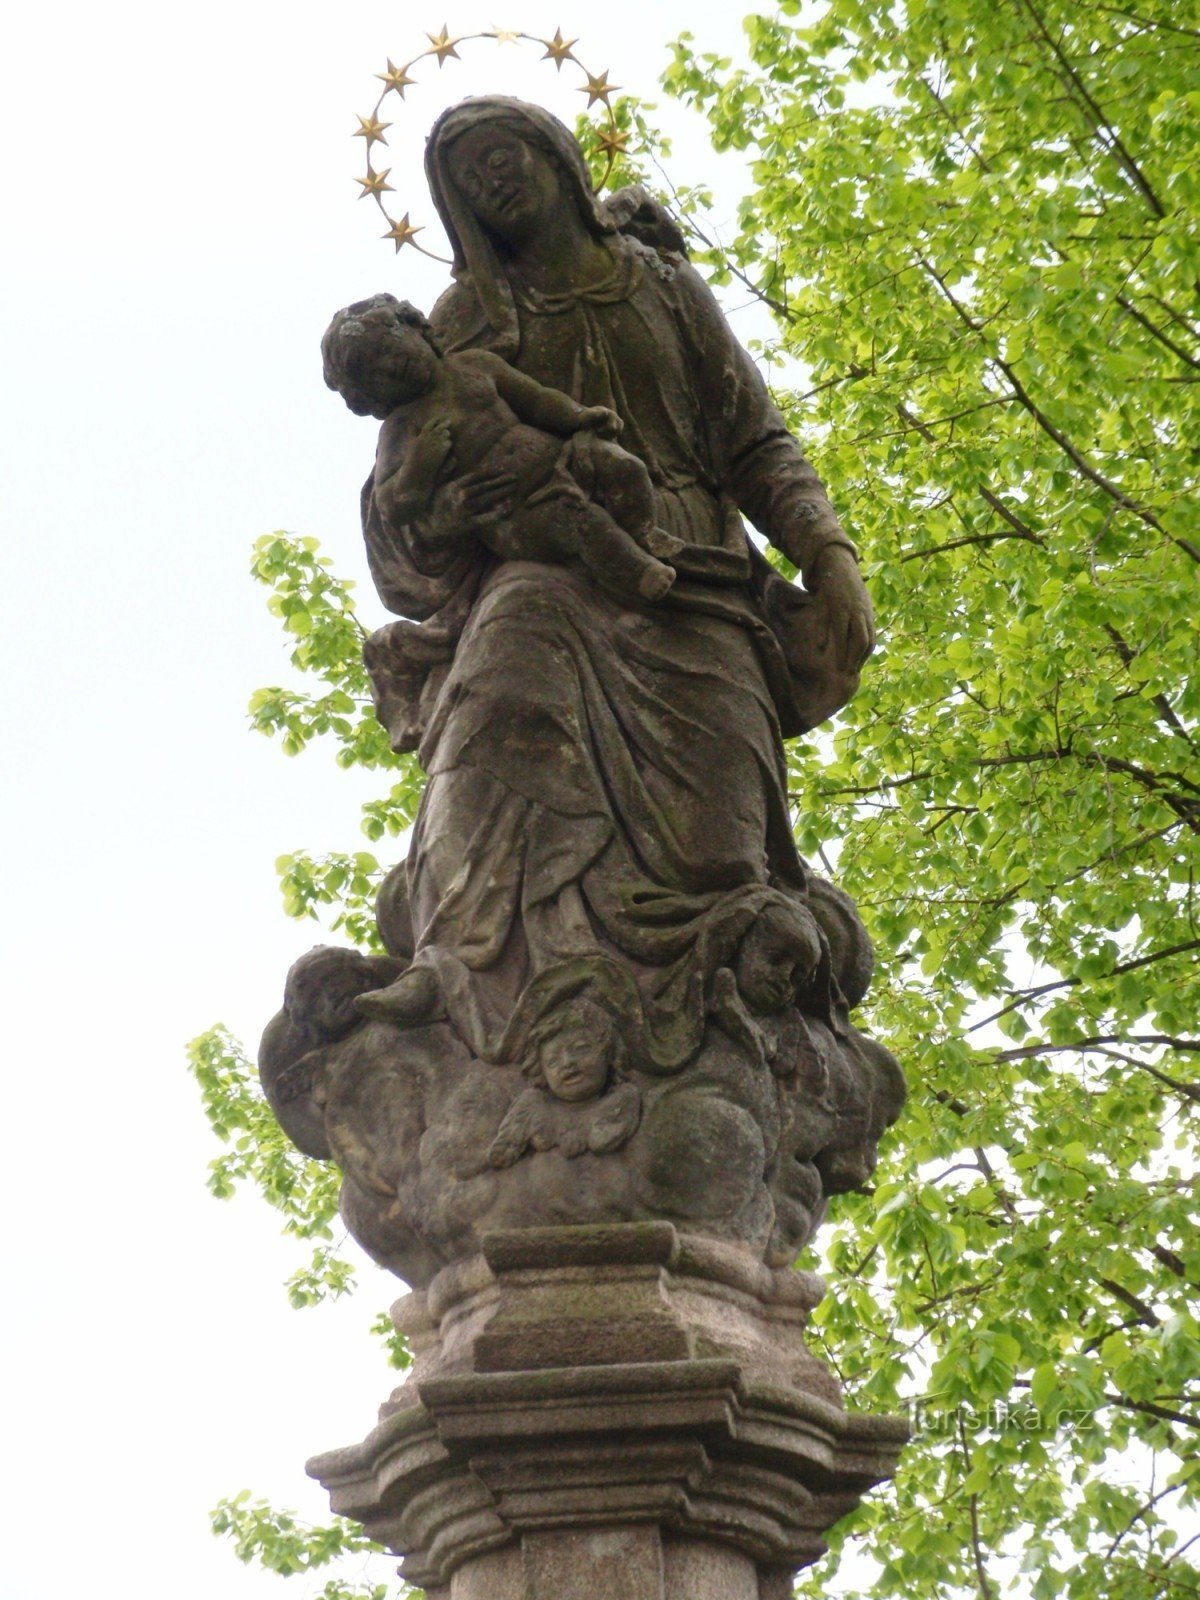 Žďár nad Sázavou - o coloană cu o statuie a Fecioarei Maria